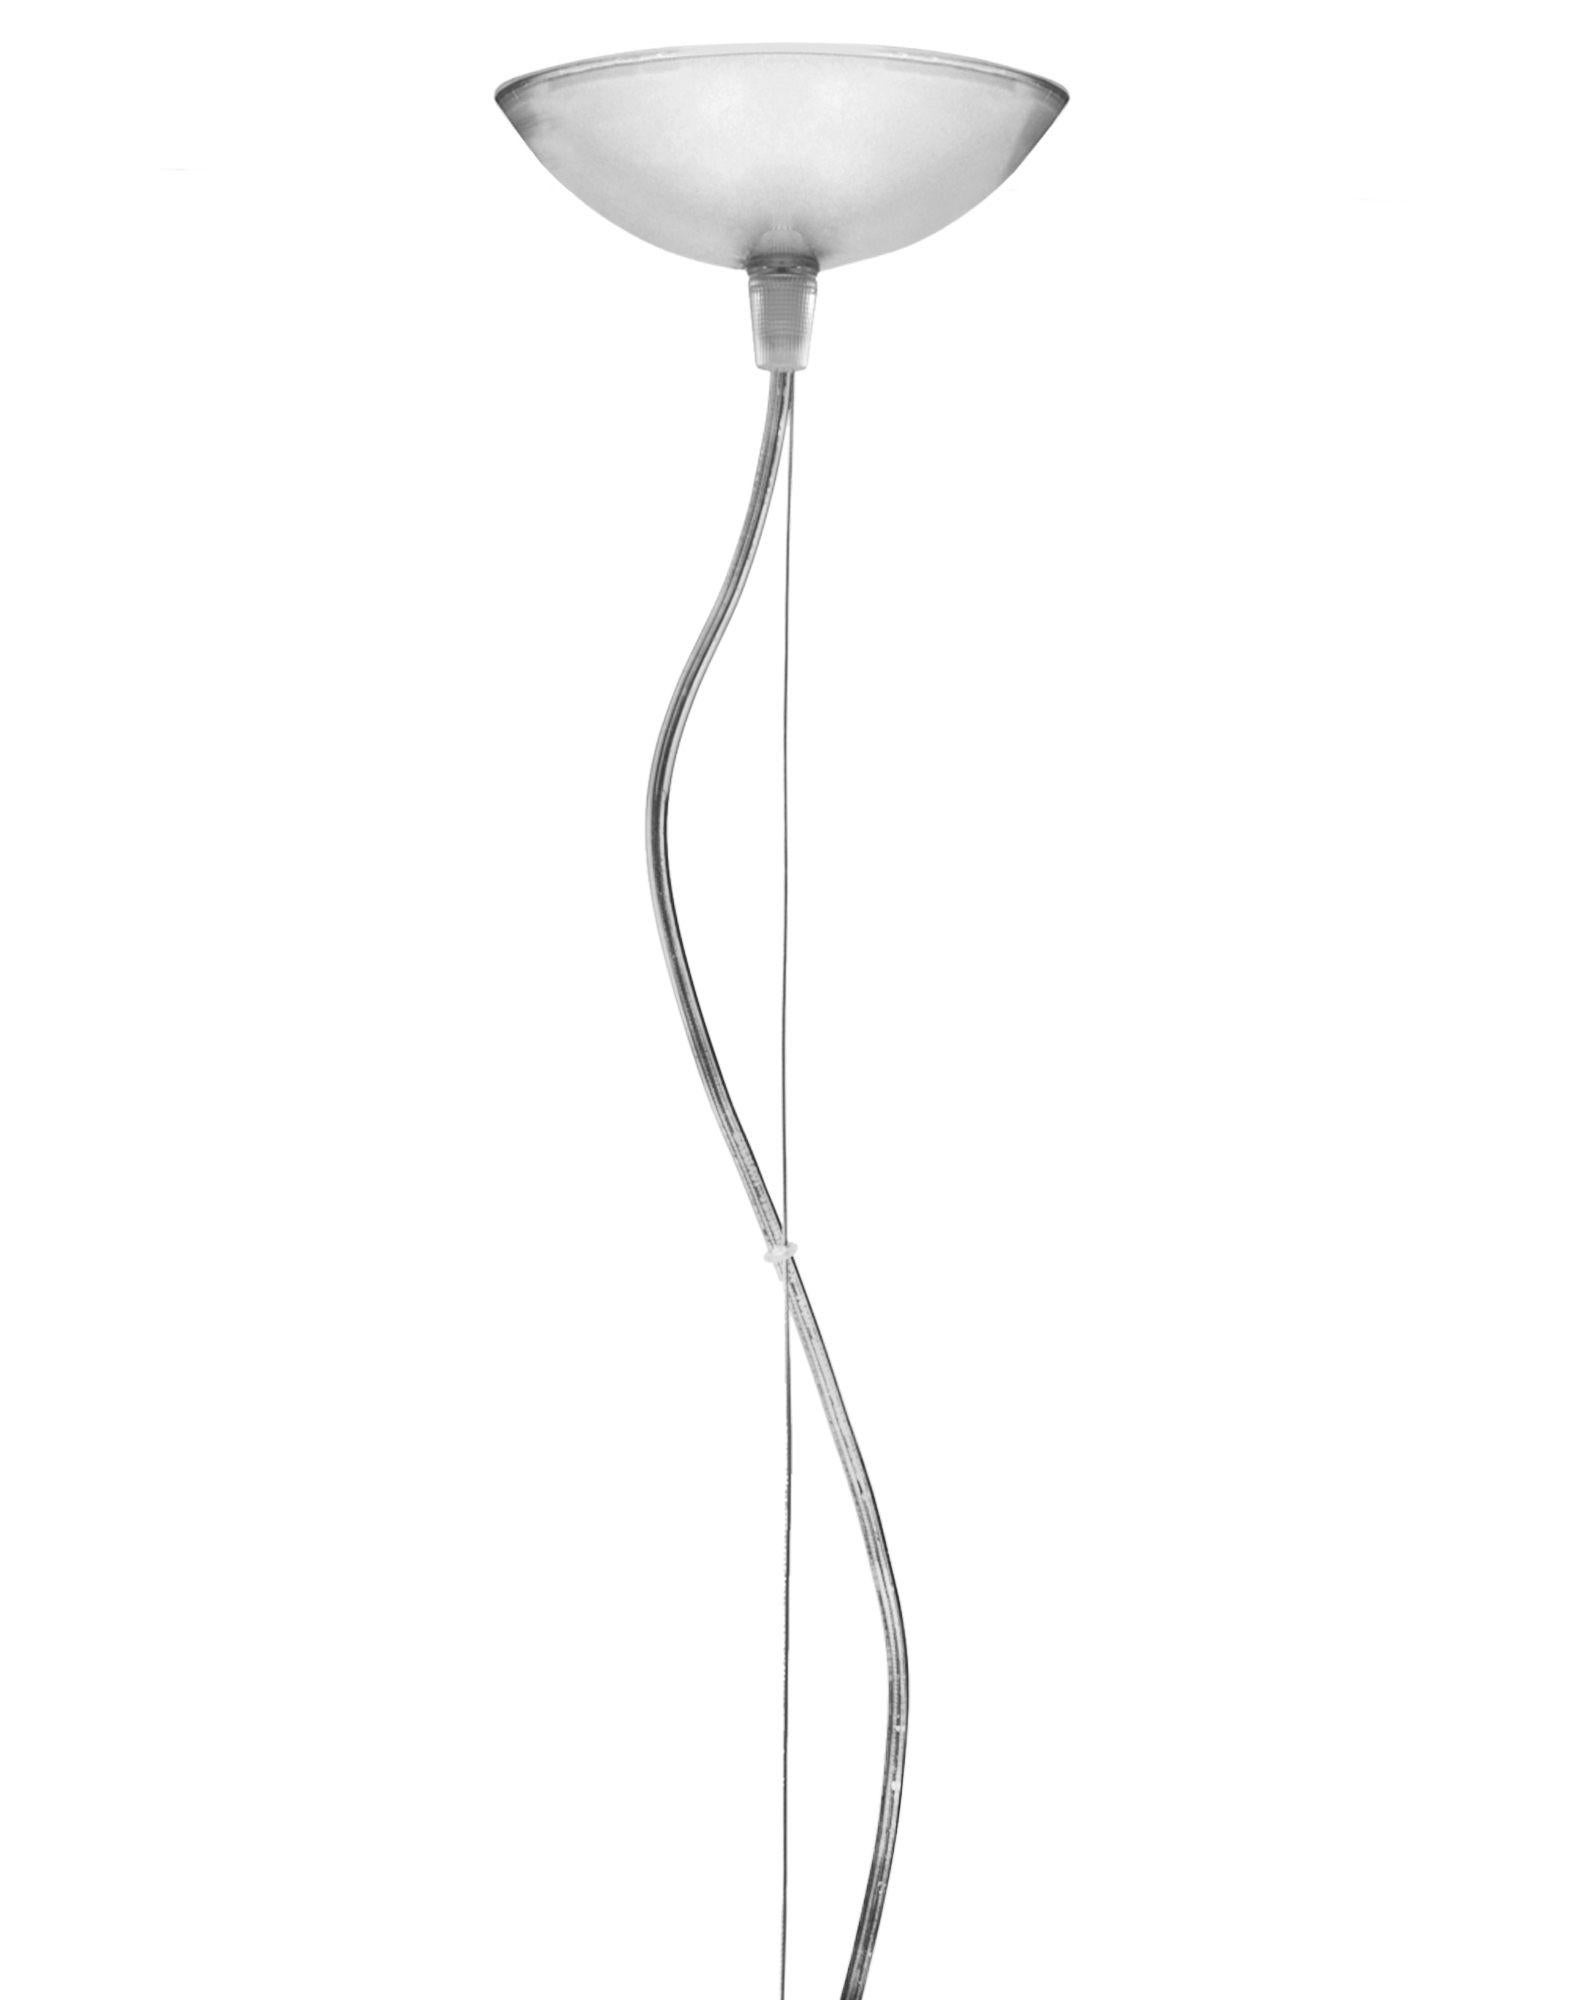 FL/Y lampe pendante petite en cristal. Il s'agit d'une collection de lampes à suspension conçue par Ferruccio Laviani en 2002.

Dimensions : Hauteur de l'abat-jour 11 po ; diamètre 15 po ; poids unitaire 1,08 kg ; fait de : PMMA. Montage